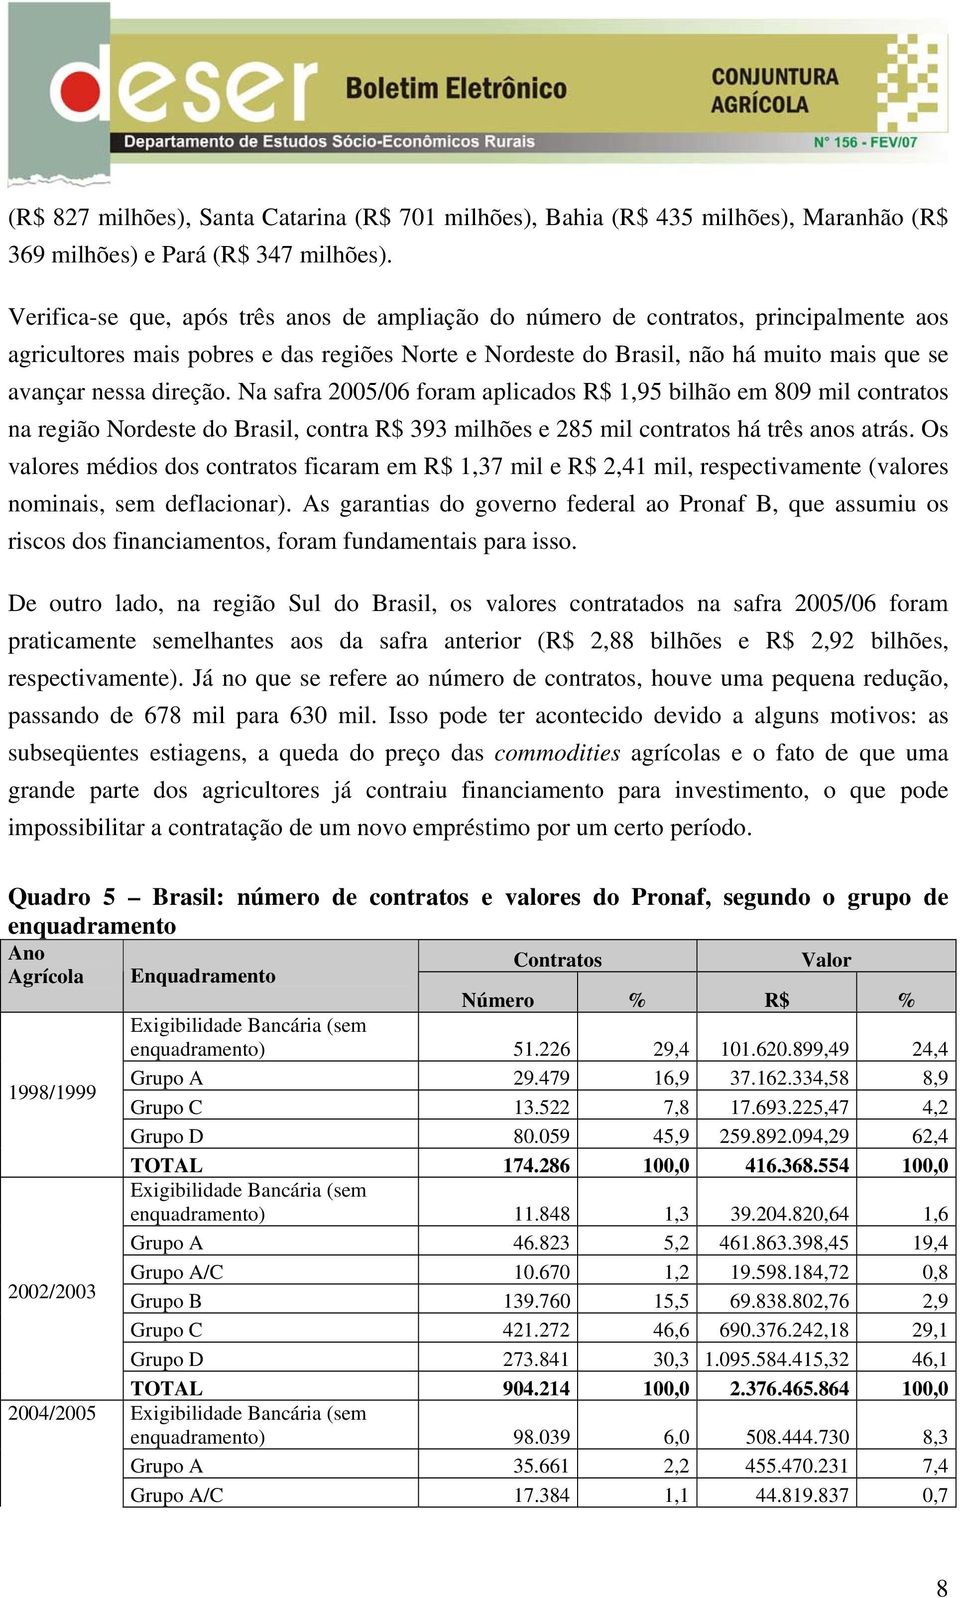 direção. Na safra 2005/06 foram aplicados R$ 1,95 bilhão em 809 mil contratos na região Nordeste do Brasil, contra R$ 393 milhões e 285 mil contratos há três anos atrás.